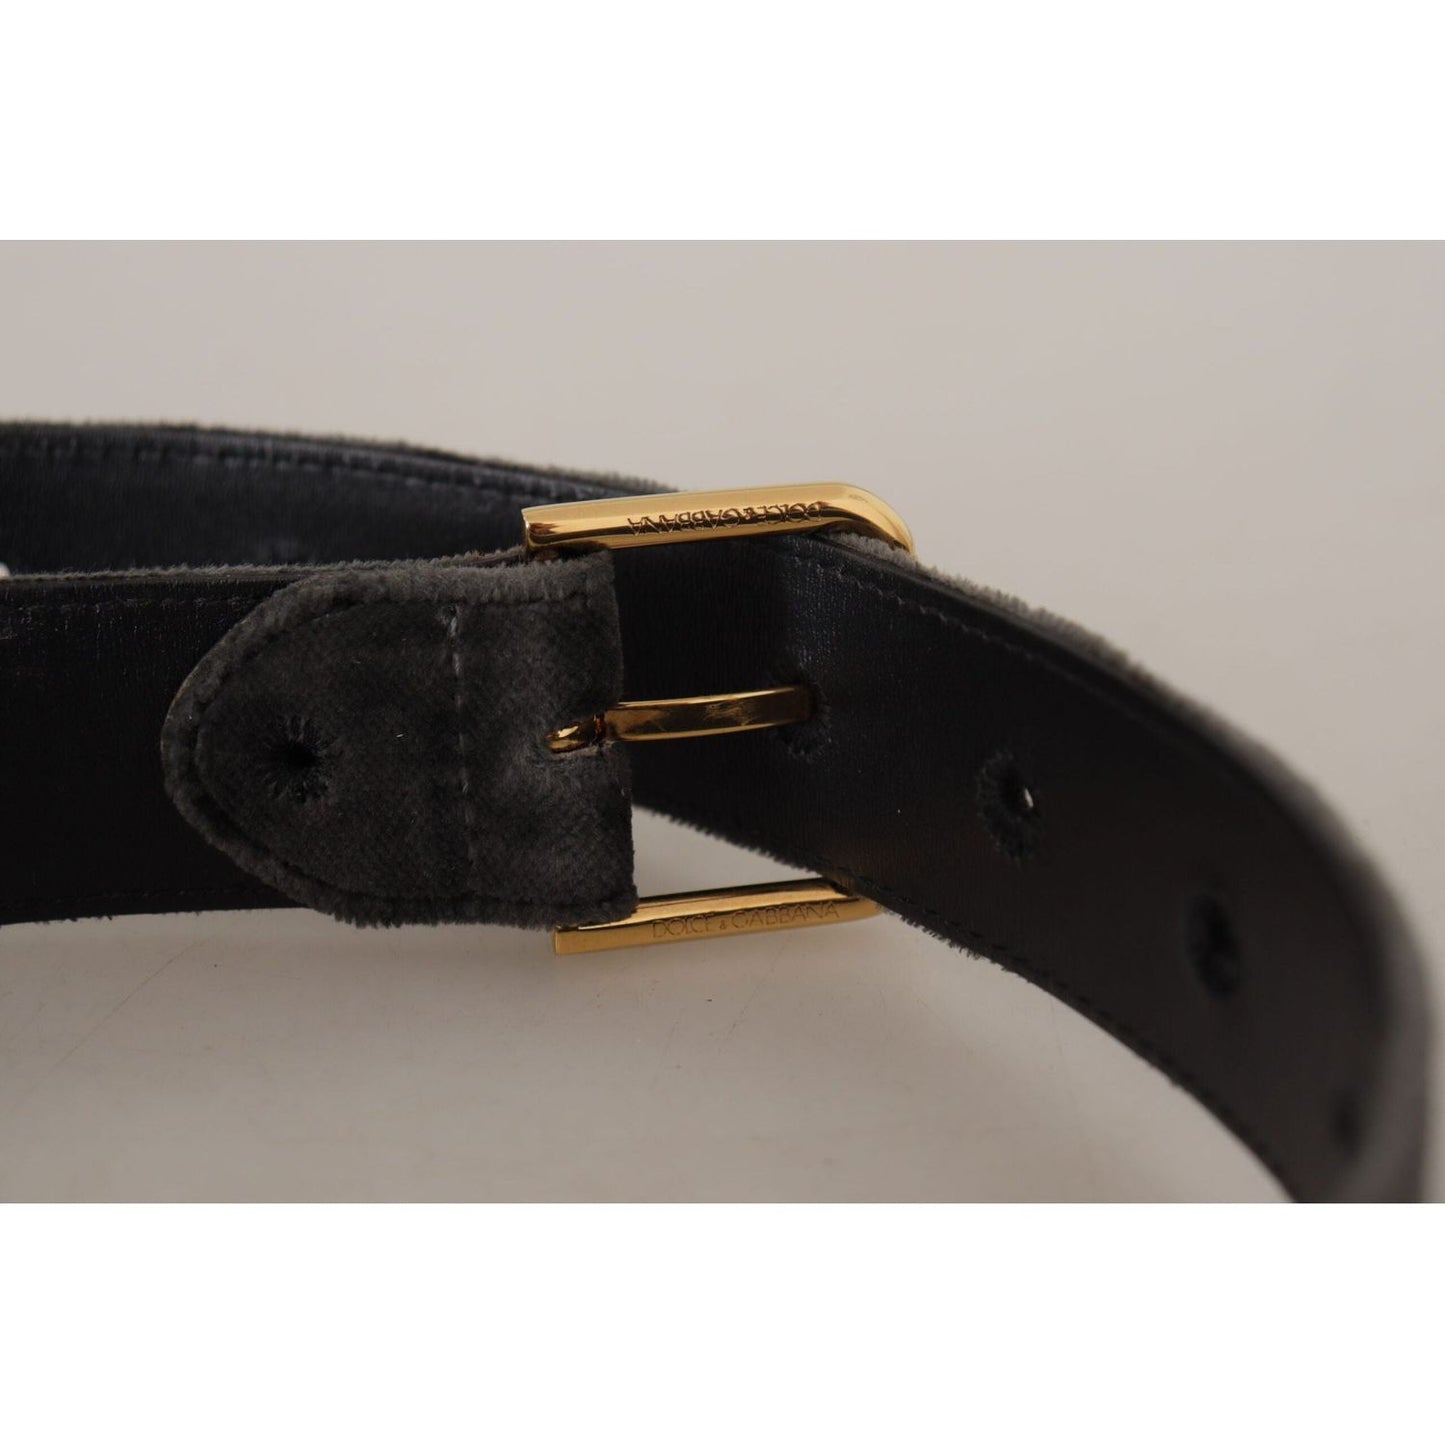 Dolce & Gabbana Elegant Velvet Belt with Engraved Buckle brown-velvet-gold-tone-logo-metal-waist-buckle-belt IMG_9152-1-scaled-d88c4be8-2c8.jpg